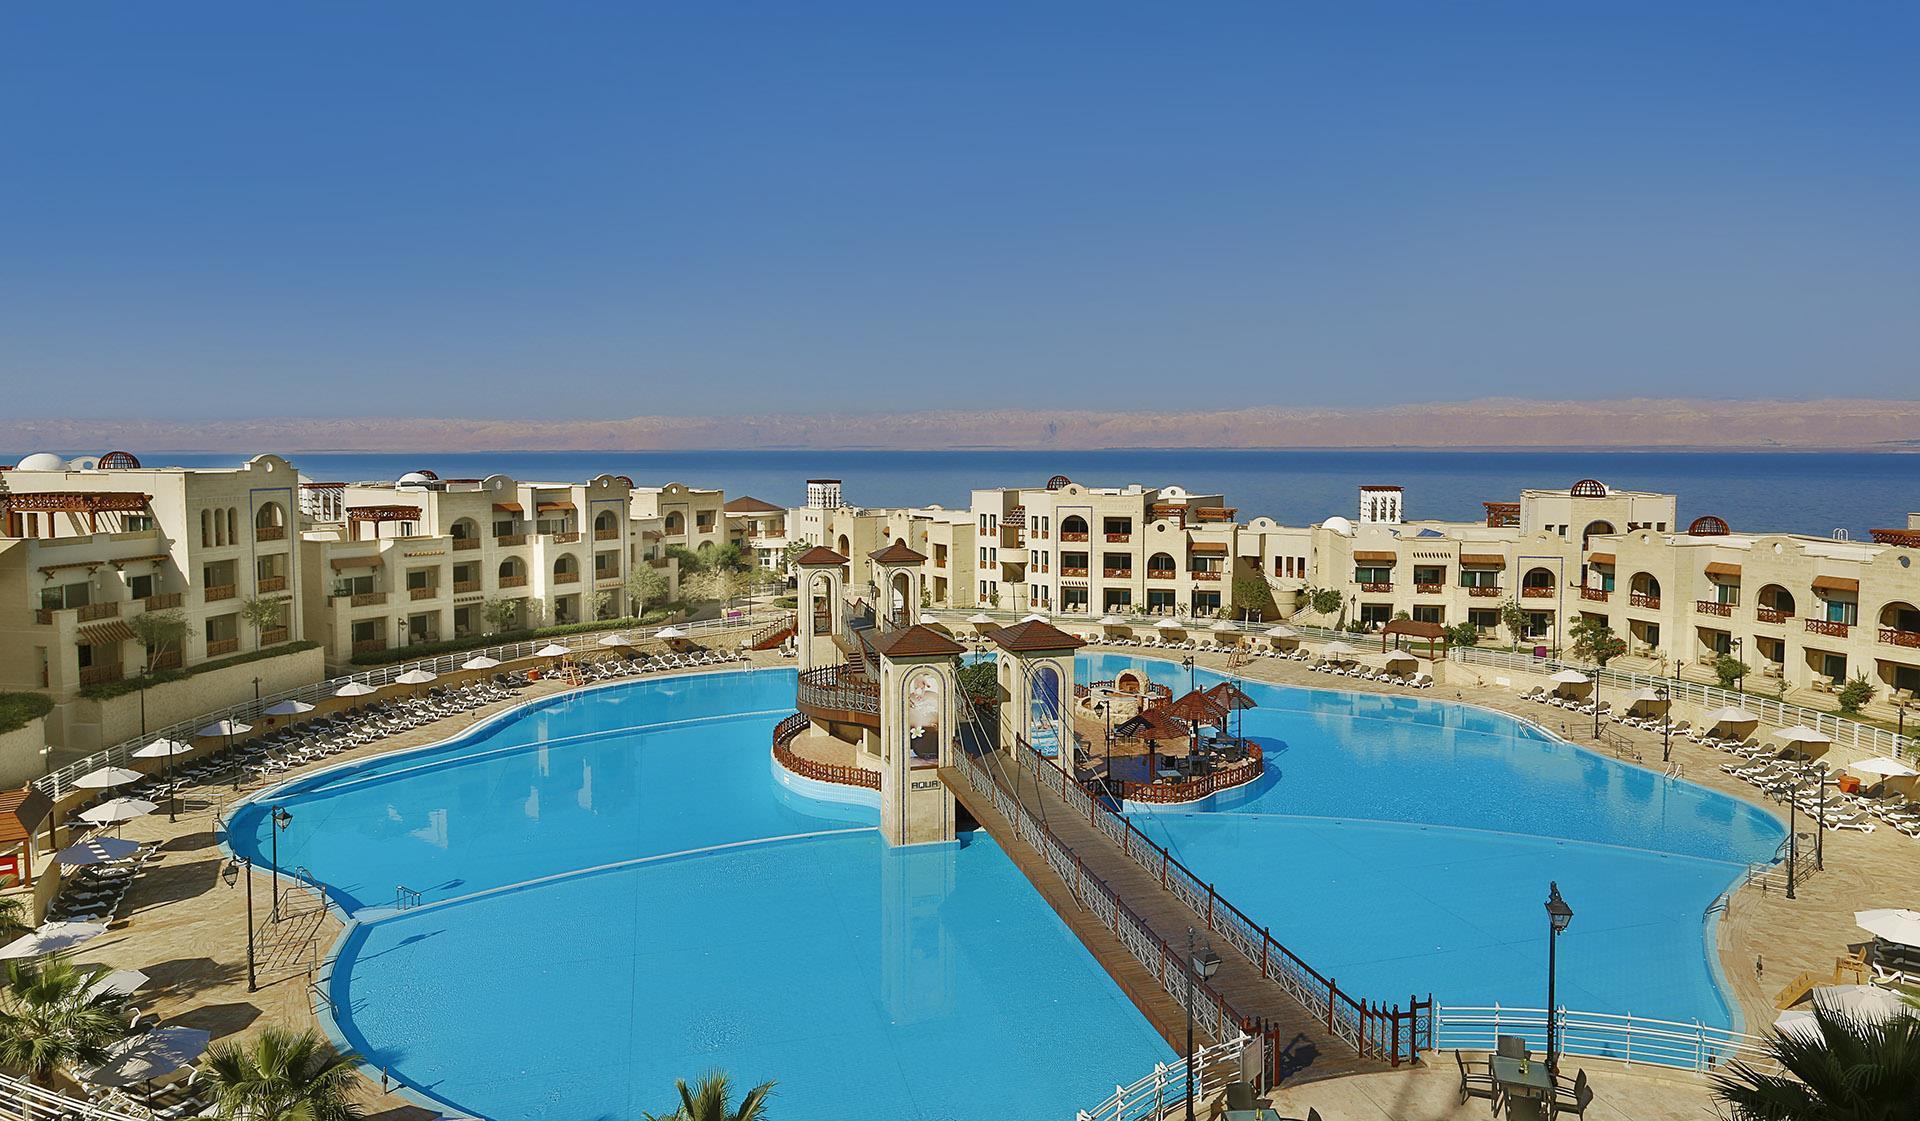 Crowne Plaza Jordan - Dead Sea Resort and Spa in Sweimeh, JO